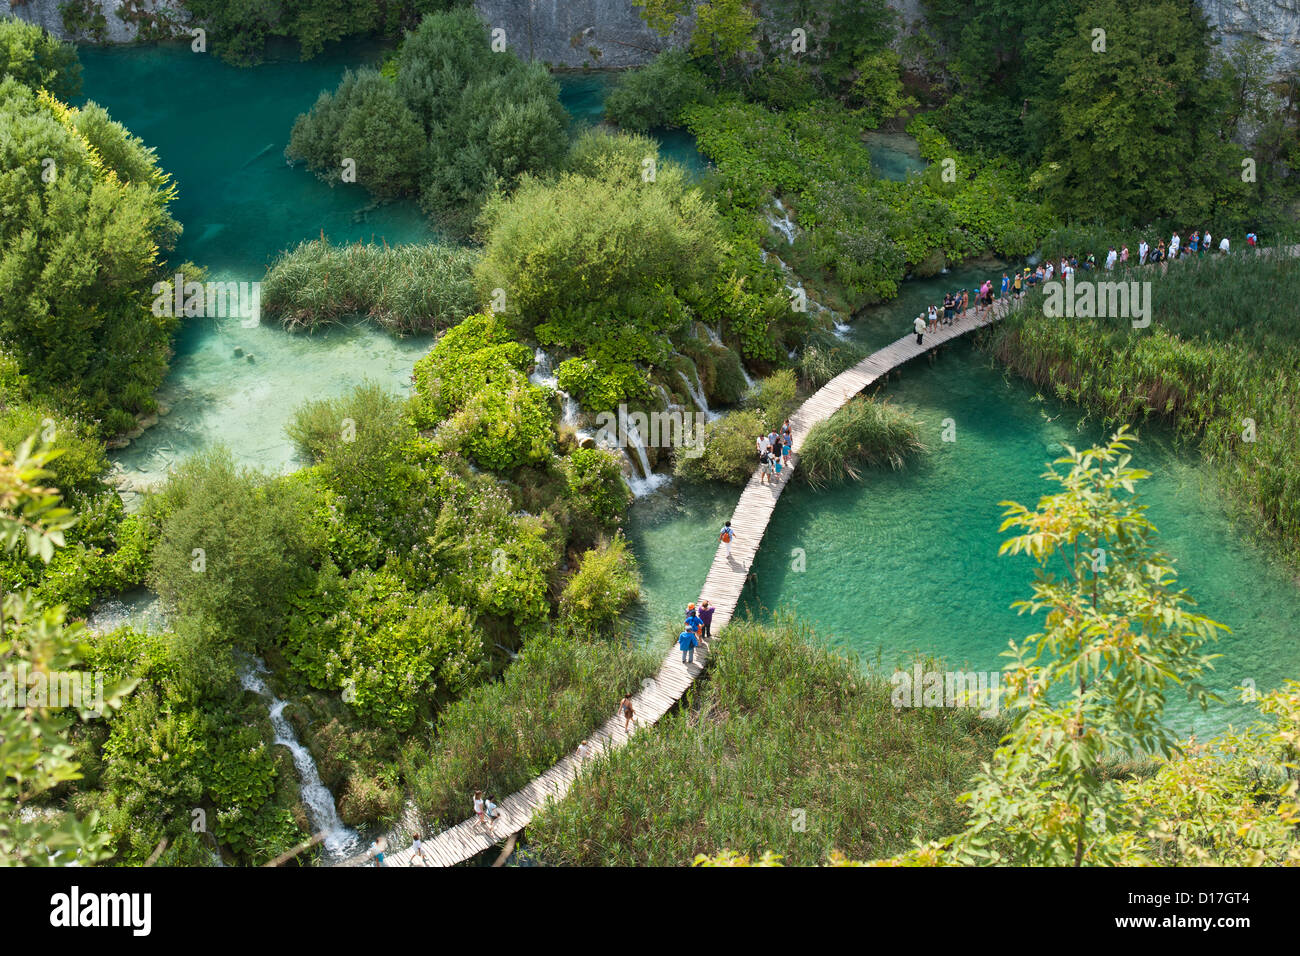 Les touristes à marcher le long des allées en bois dans le parc national des Lacs de Plitvice en Croatie. Banque D'Images